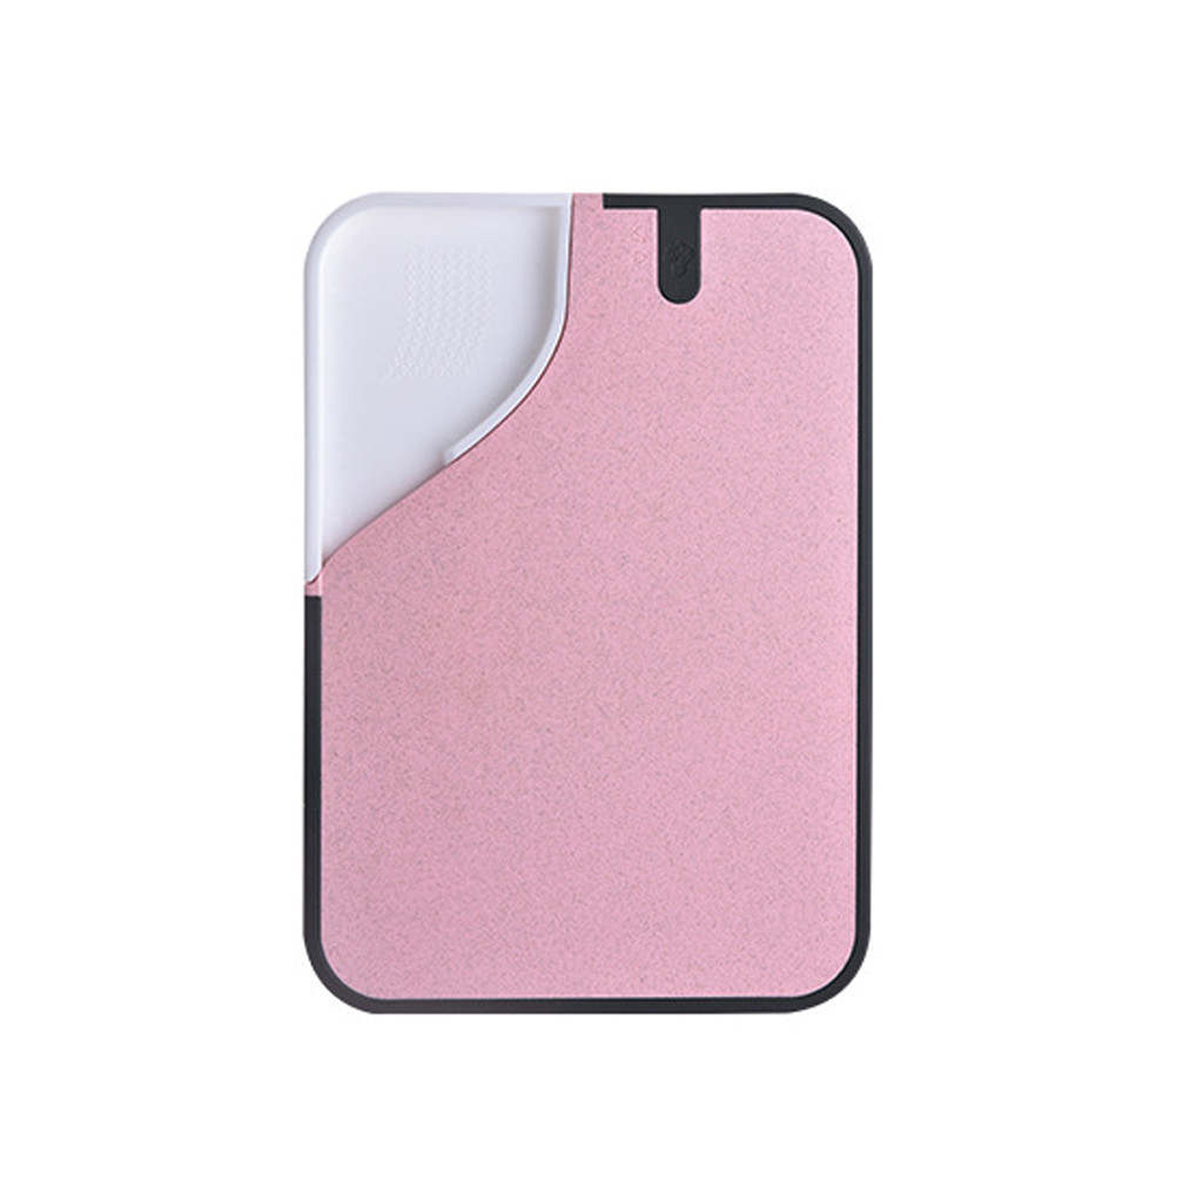 50469-01-planche-de-decoupe-cutting-chopping-board-pink